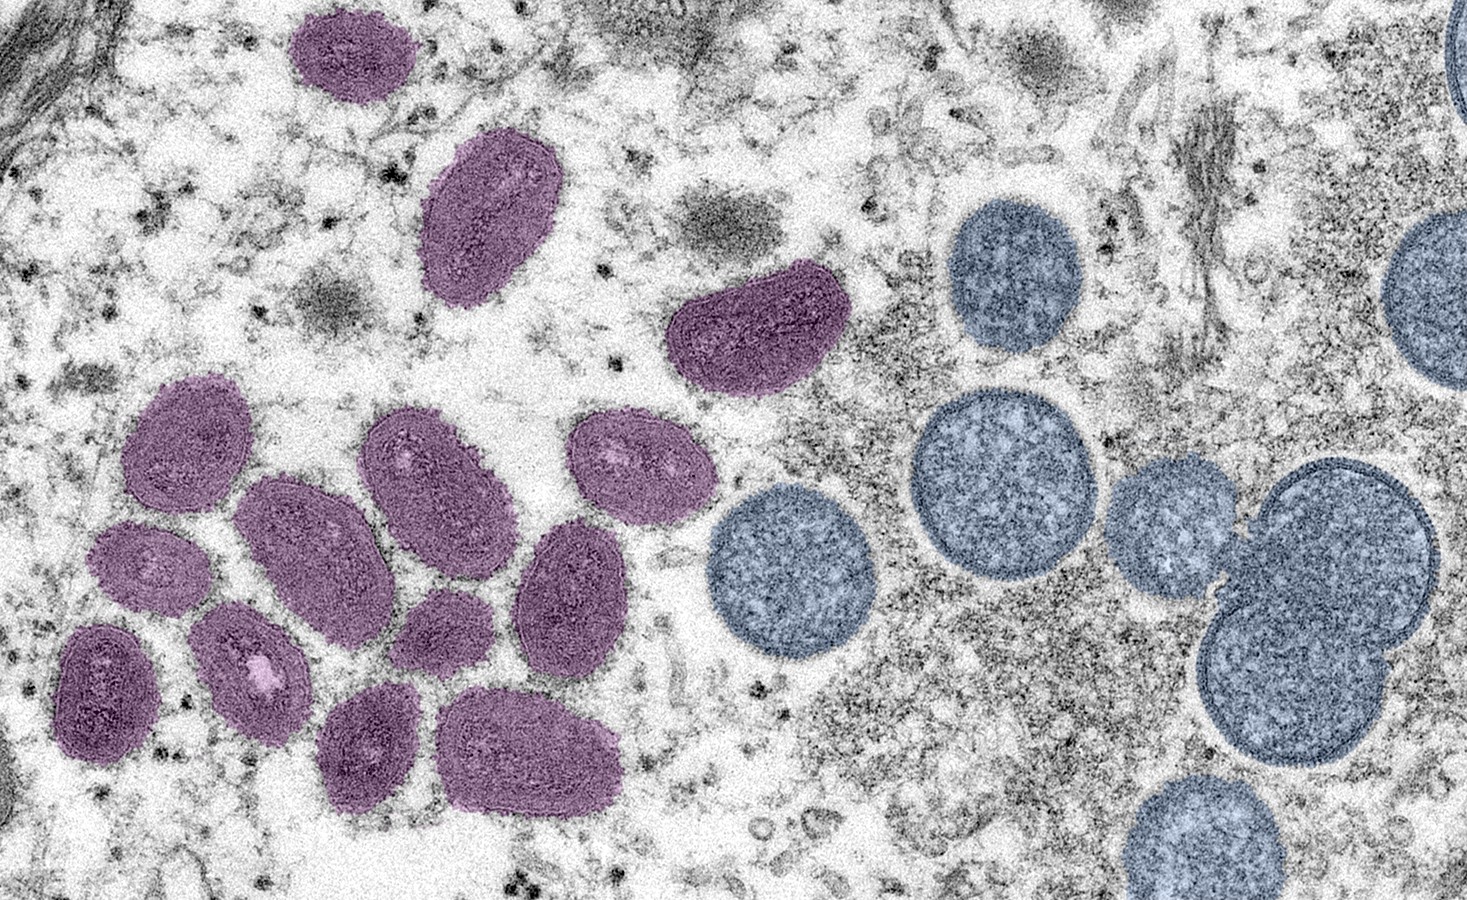 Vírus da varíola dos macacos pode ser detectado em sêmen, saliva e outras secreções (Foto: Cynthia S. Goldsmith/ CDC)